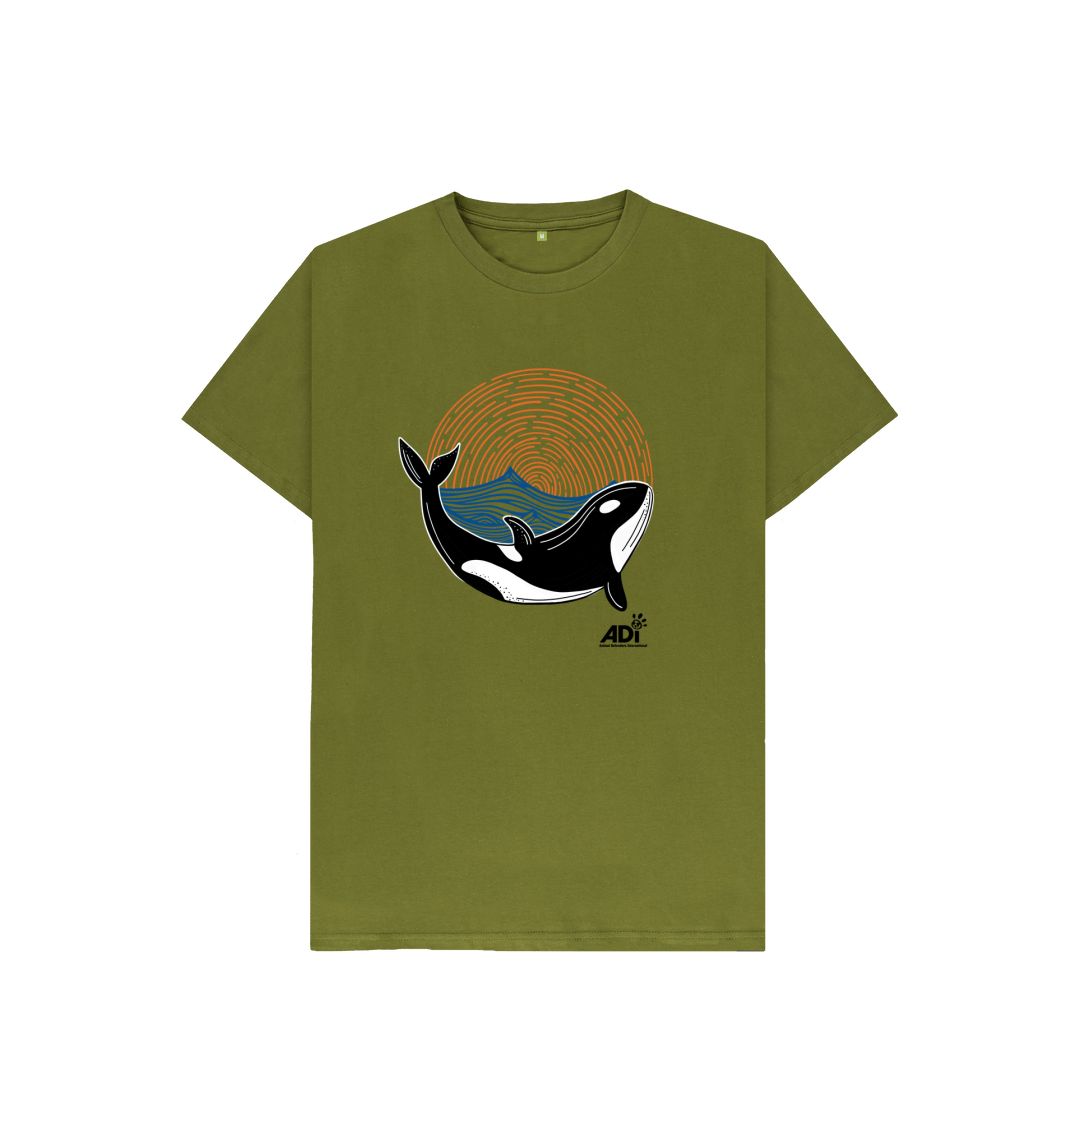 Moss Green Orca Kids T-shirt